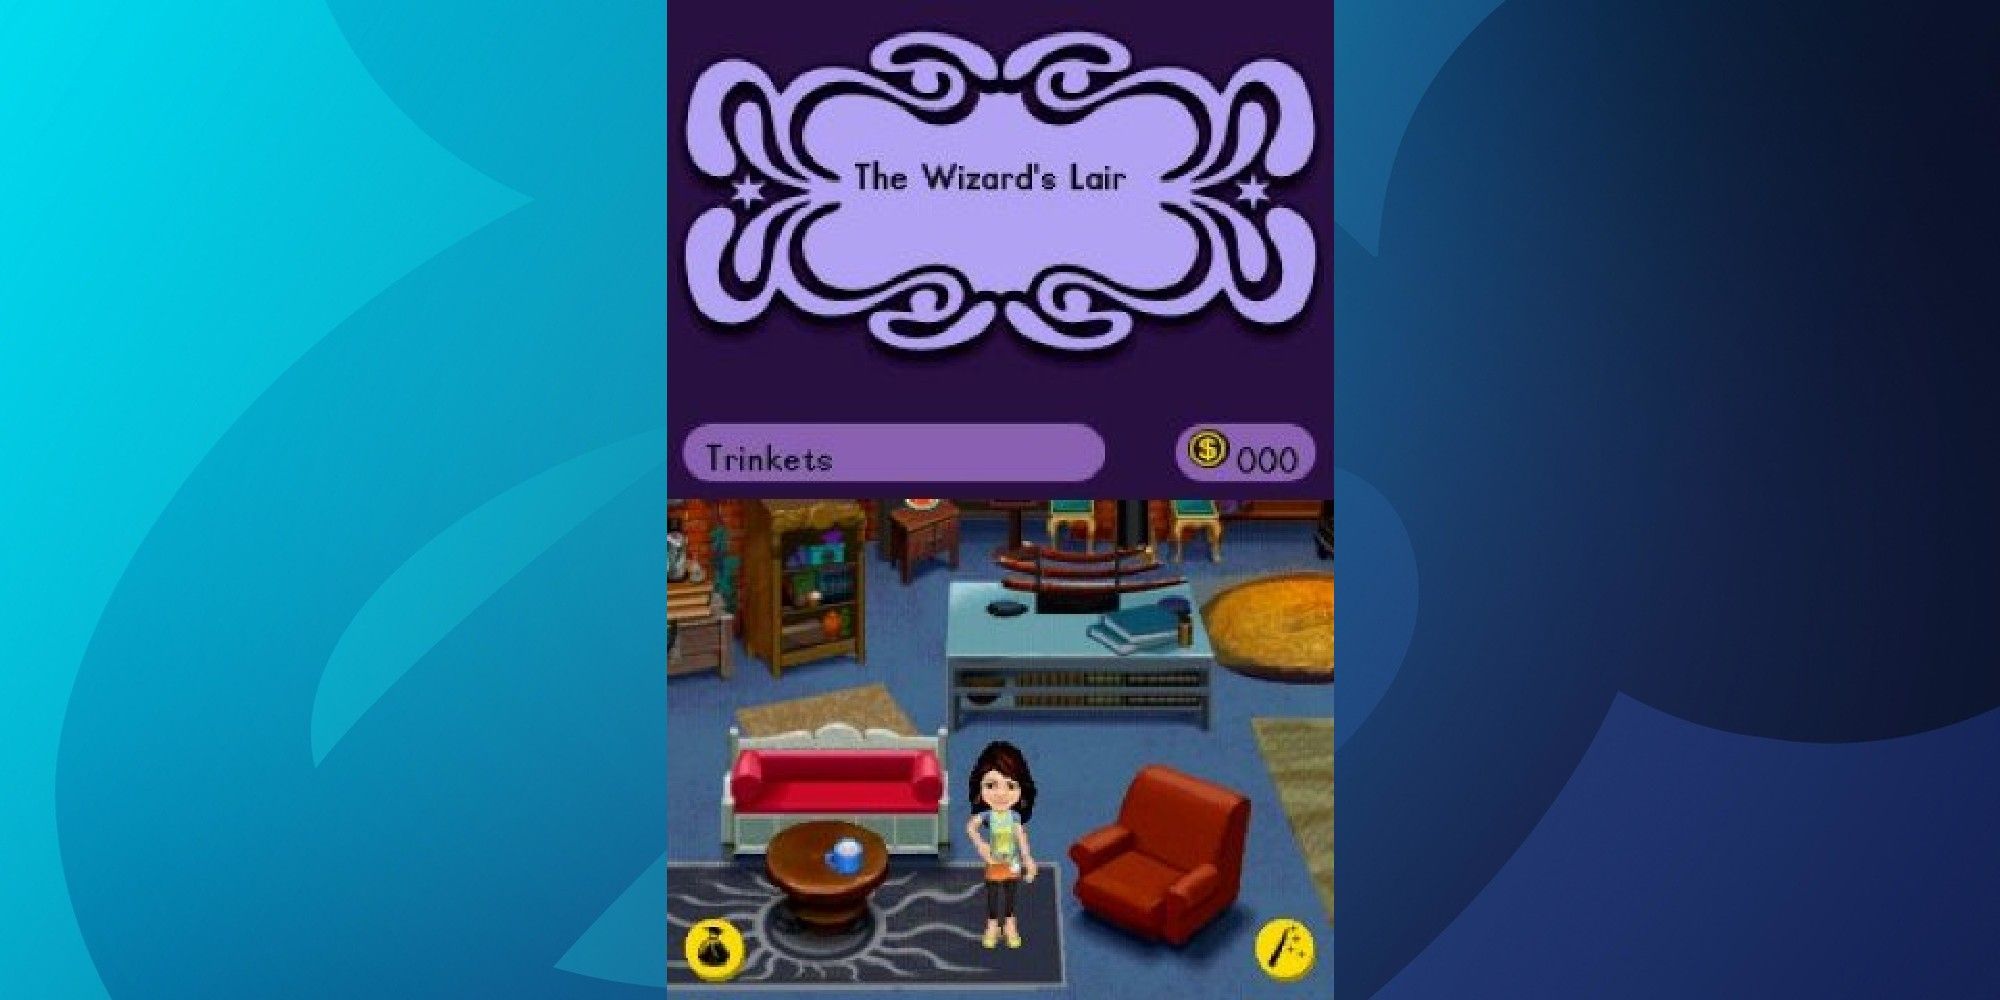 Nintendo DS vertical screenshot showing Alexa standing in The Wizard's Lair